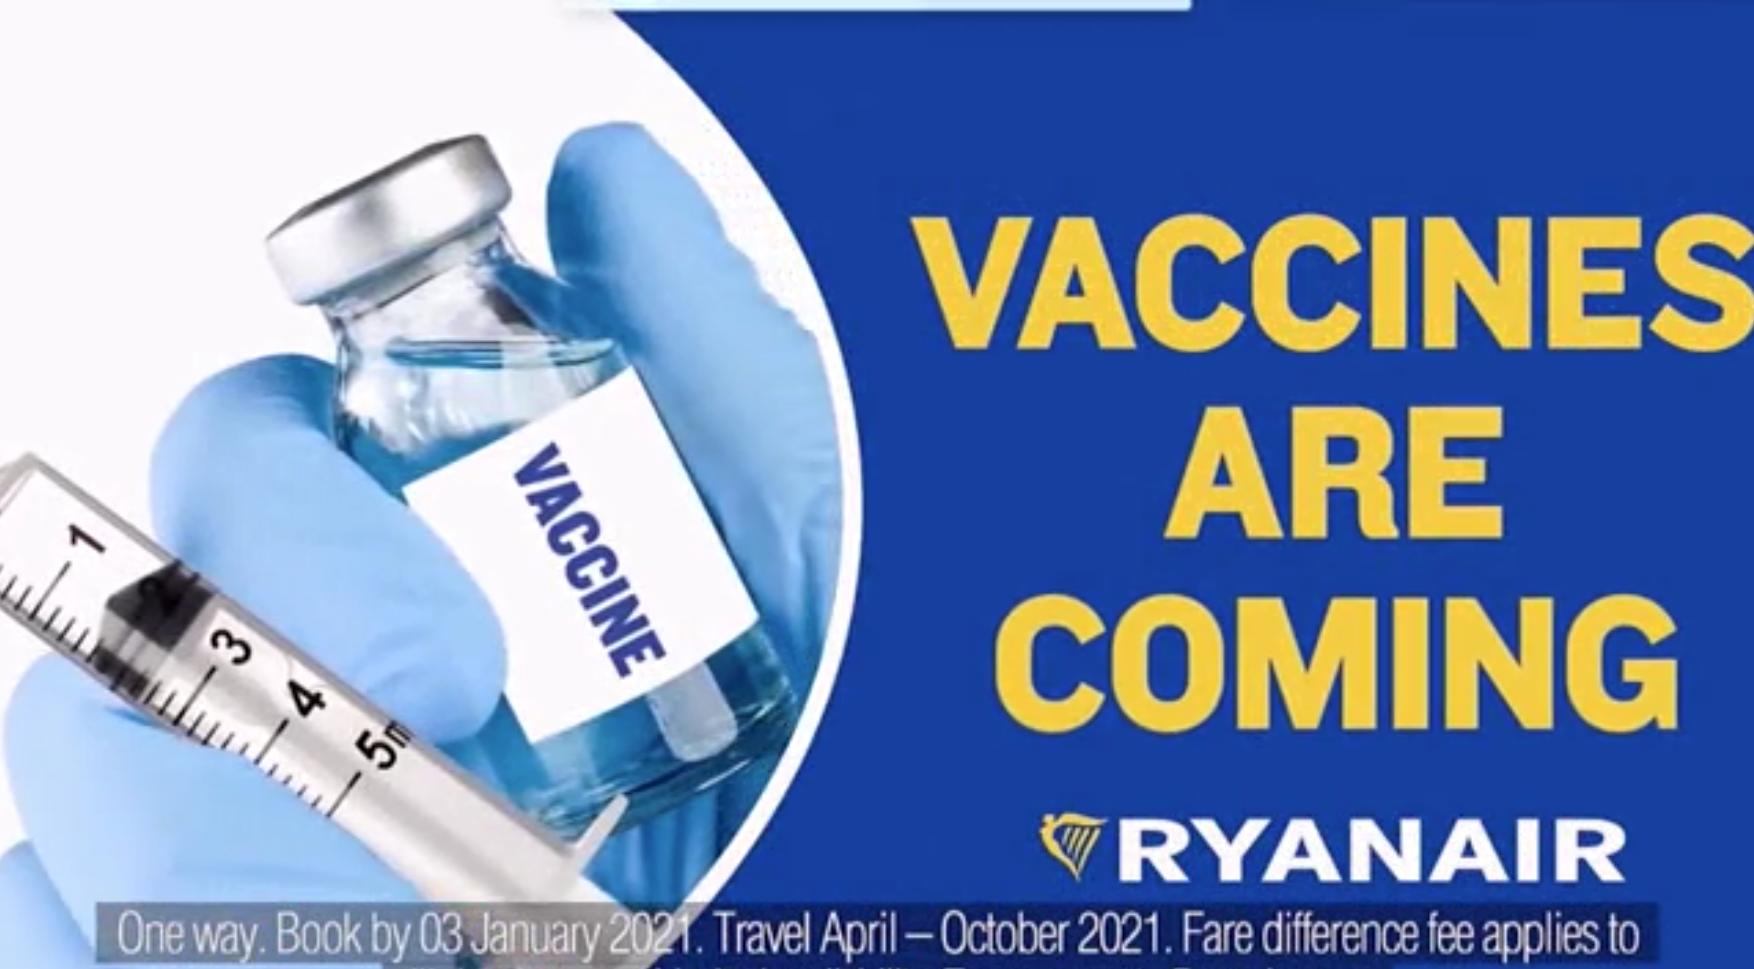 Ryanair’s new advert in response to the new coronavirus vaccine